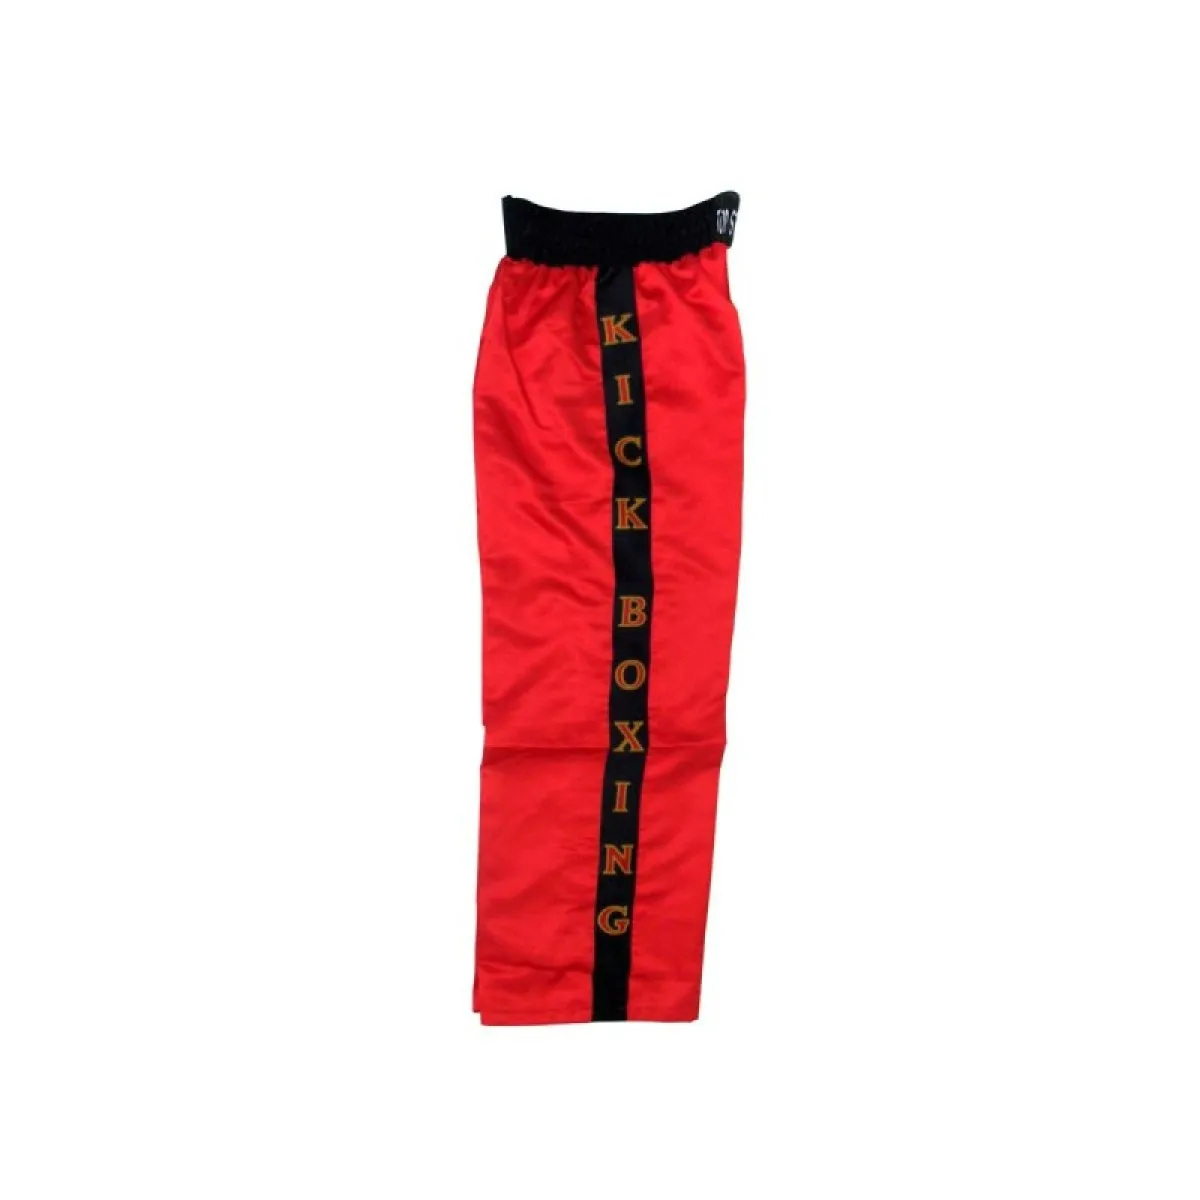 Pantalón de kickboxing rojo con rayas negras y kickboxing